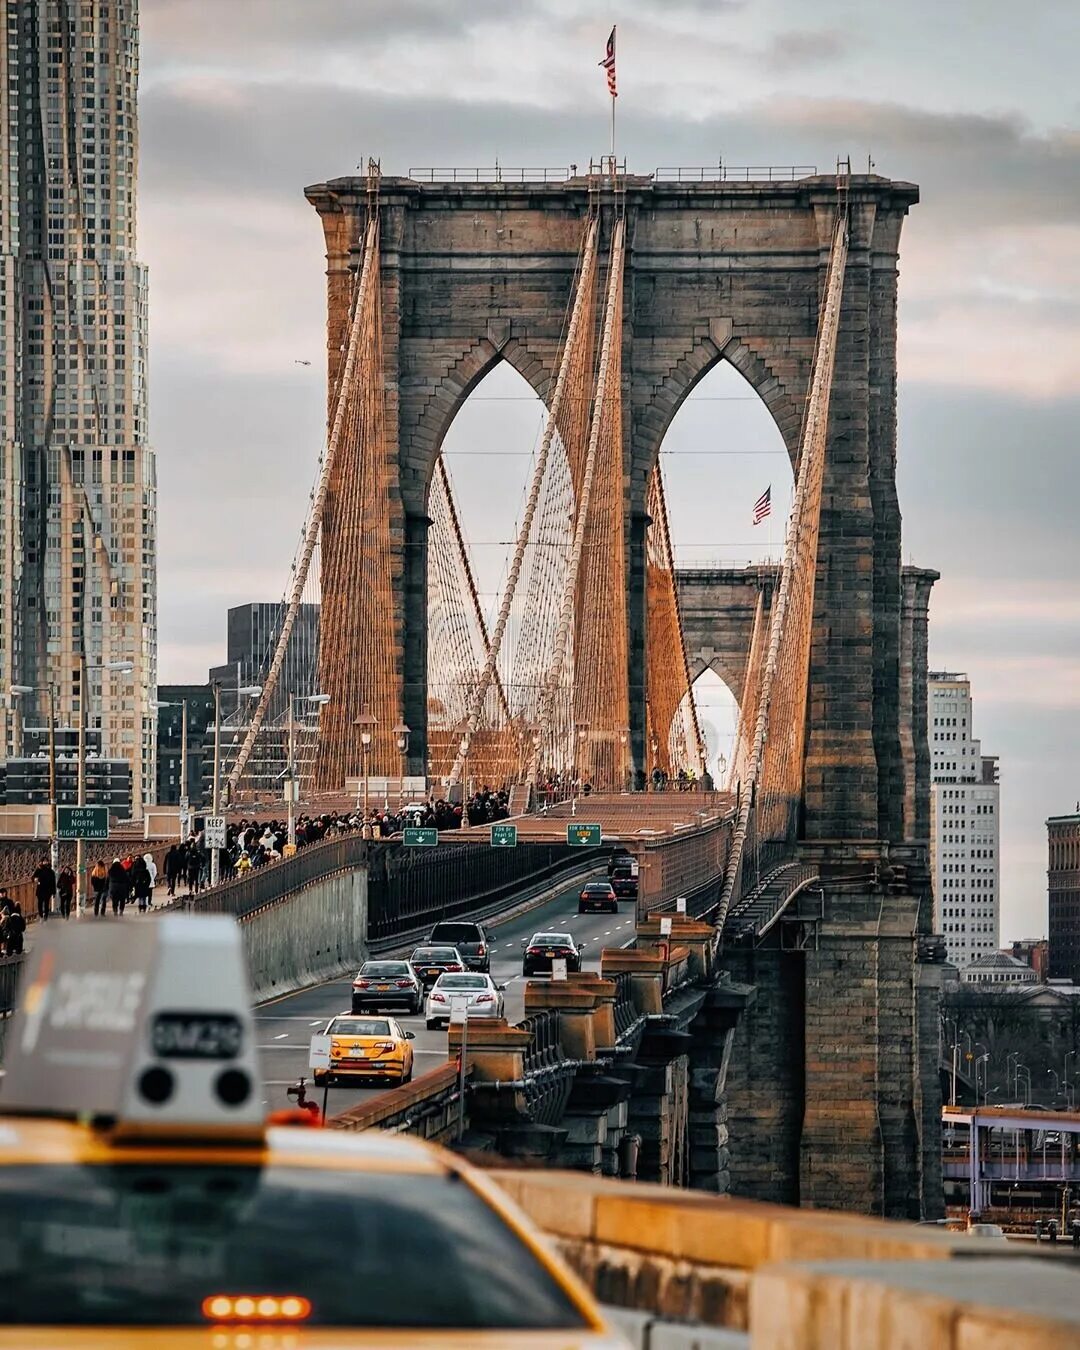 Бруклин мост. Бруклинский мост мост в Нью-Йорке. Нью Йорк Бруклин бридж. Достопримечательности Нью Йорка Бруклинский мост. Бруклин архитектура Нью-Йорк.